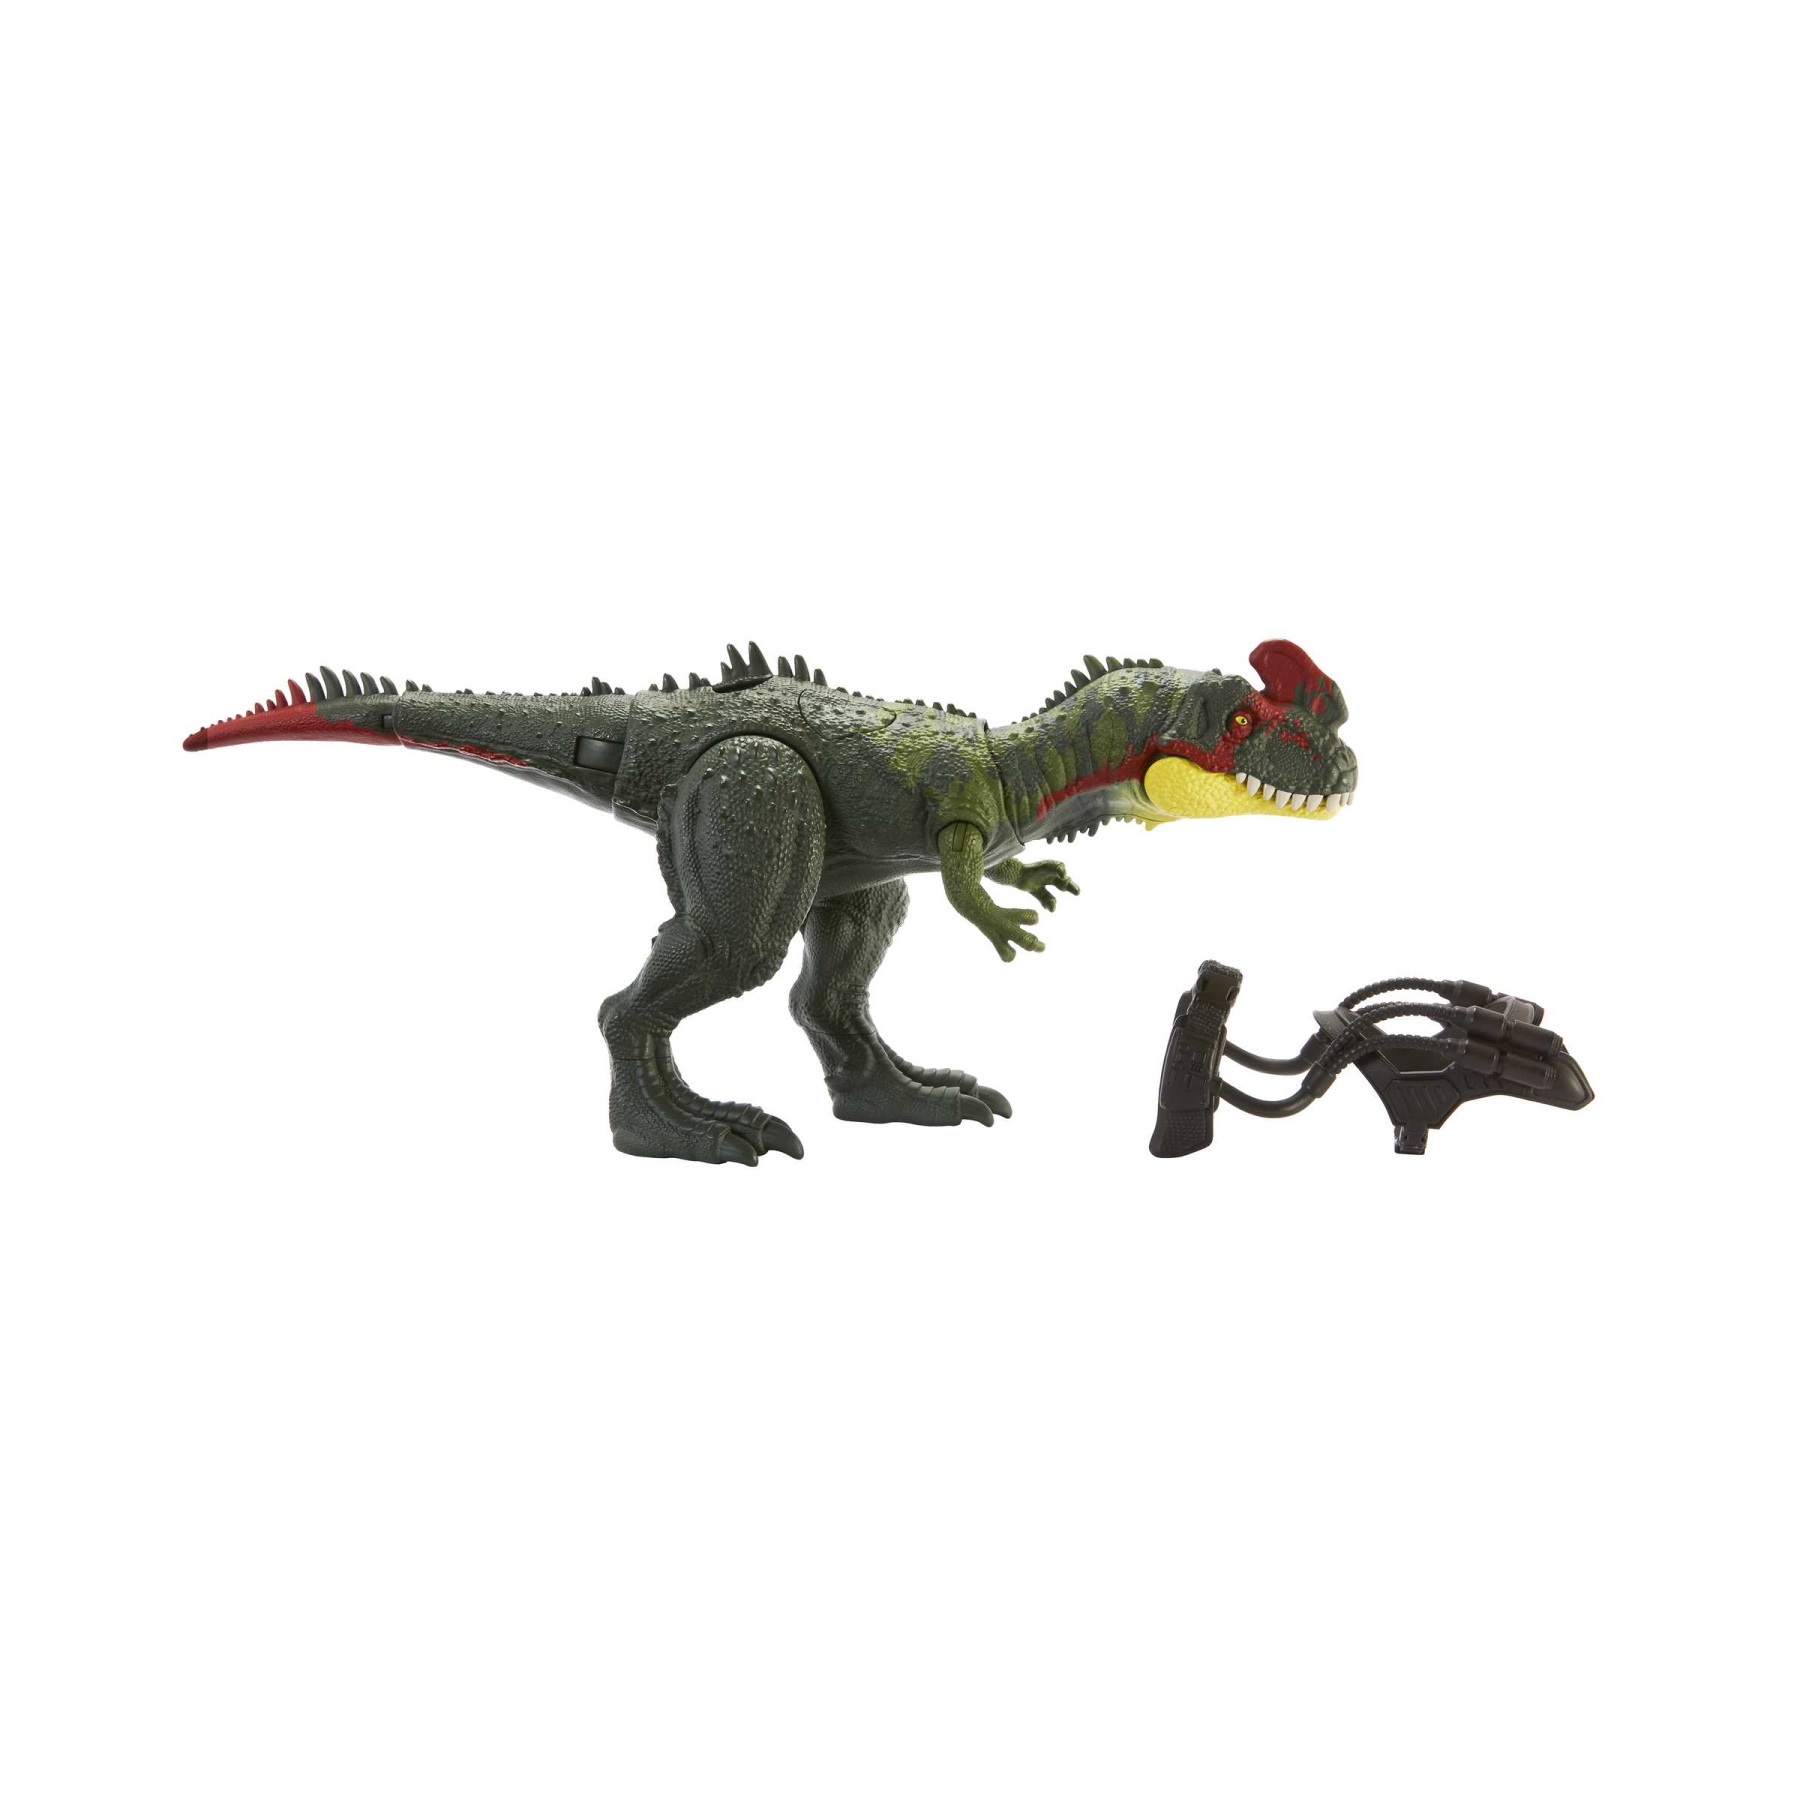 Jurassic world - predatori giganti, sinotiranno, dinosauro di grandi dimensioni con mossa d'attacco e kit di tracciamento, per il gioco classico e digitale, giocattolo, 4+ anni, hlp25 - Jurassic World